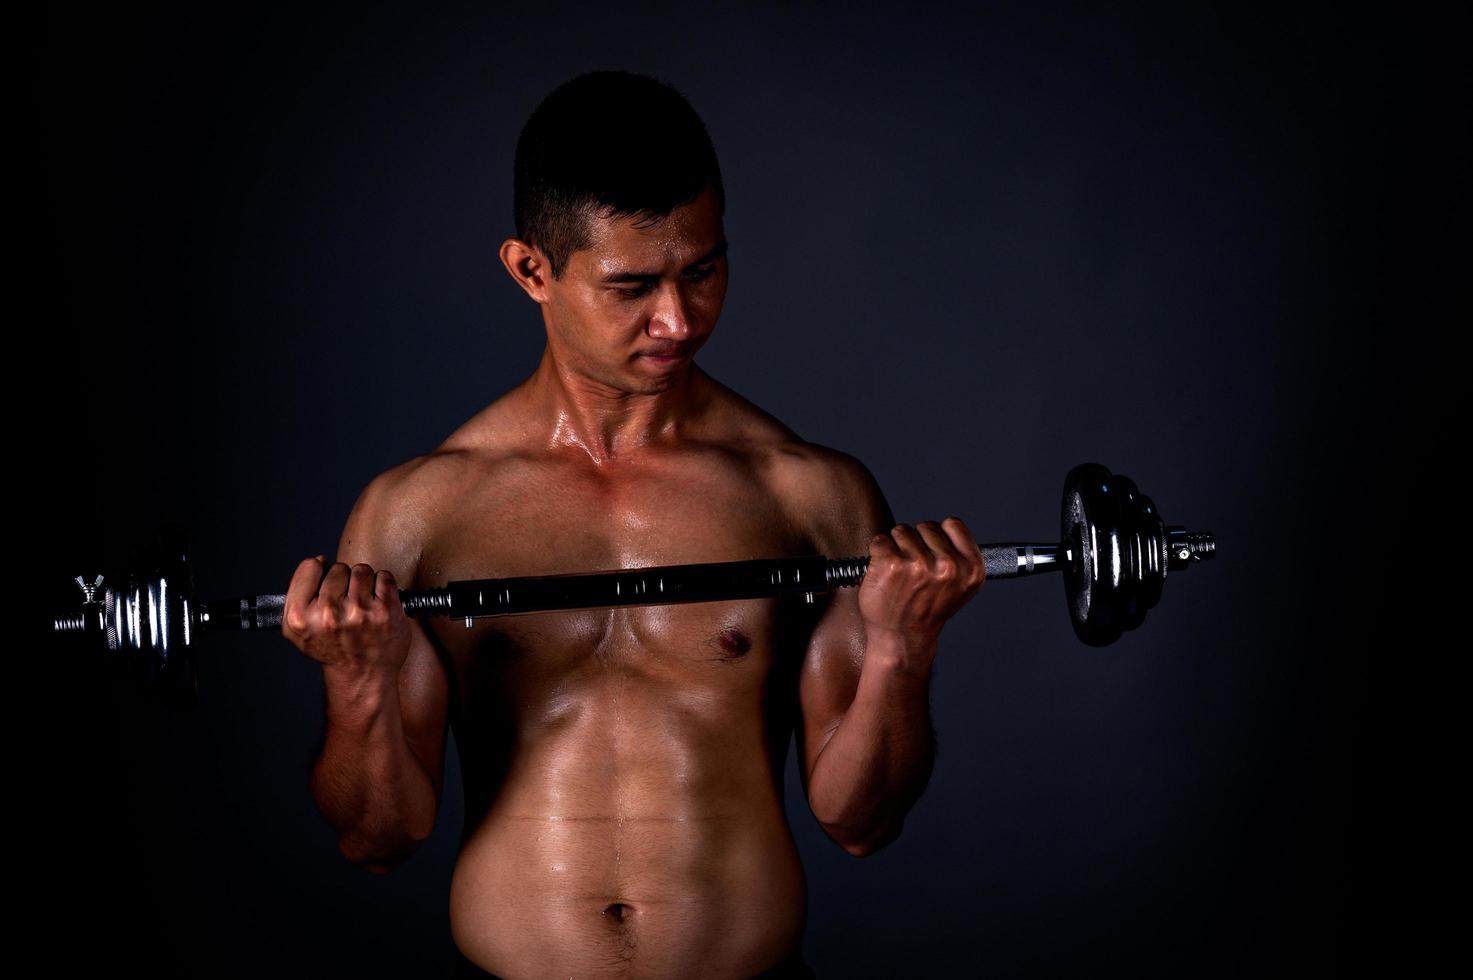 Der starke Asiate hob regelmäßig seine Hantel, um seine Muskeln stark und schön zu halten foto